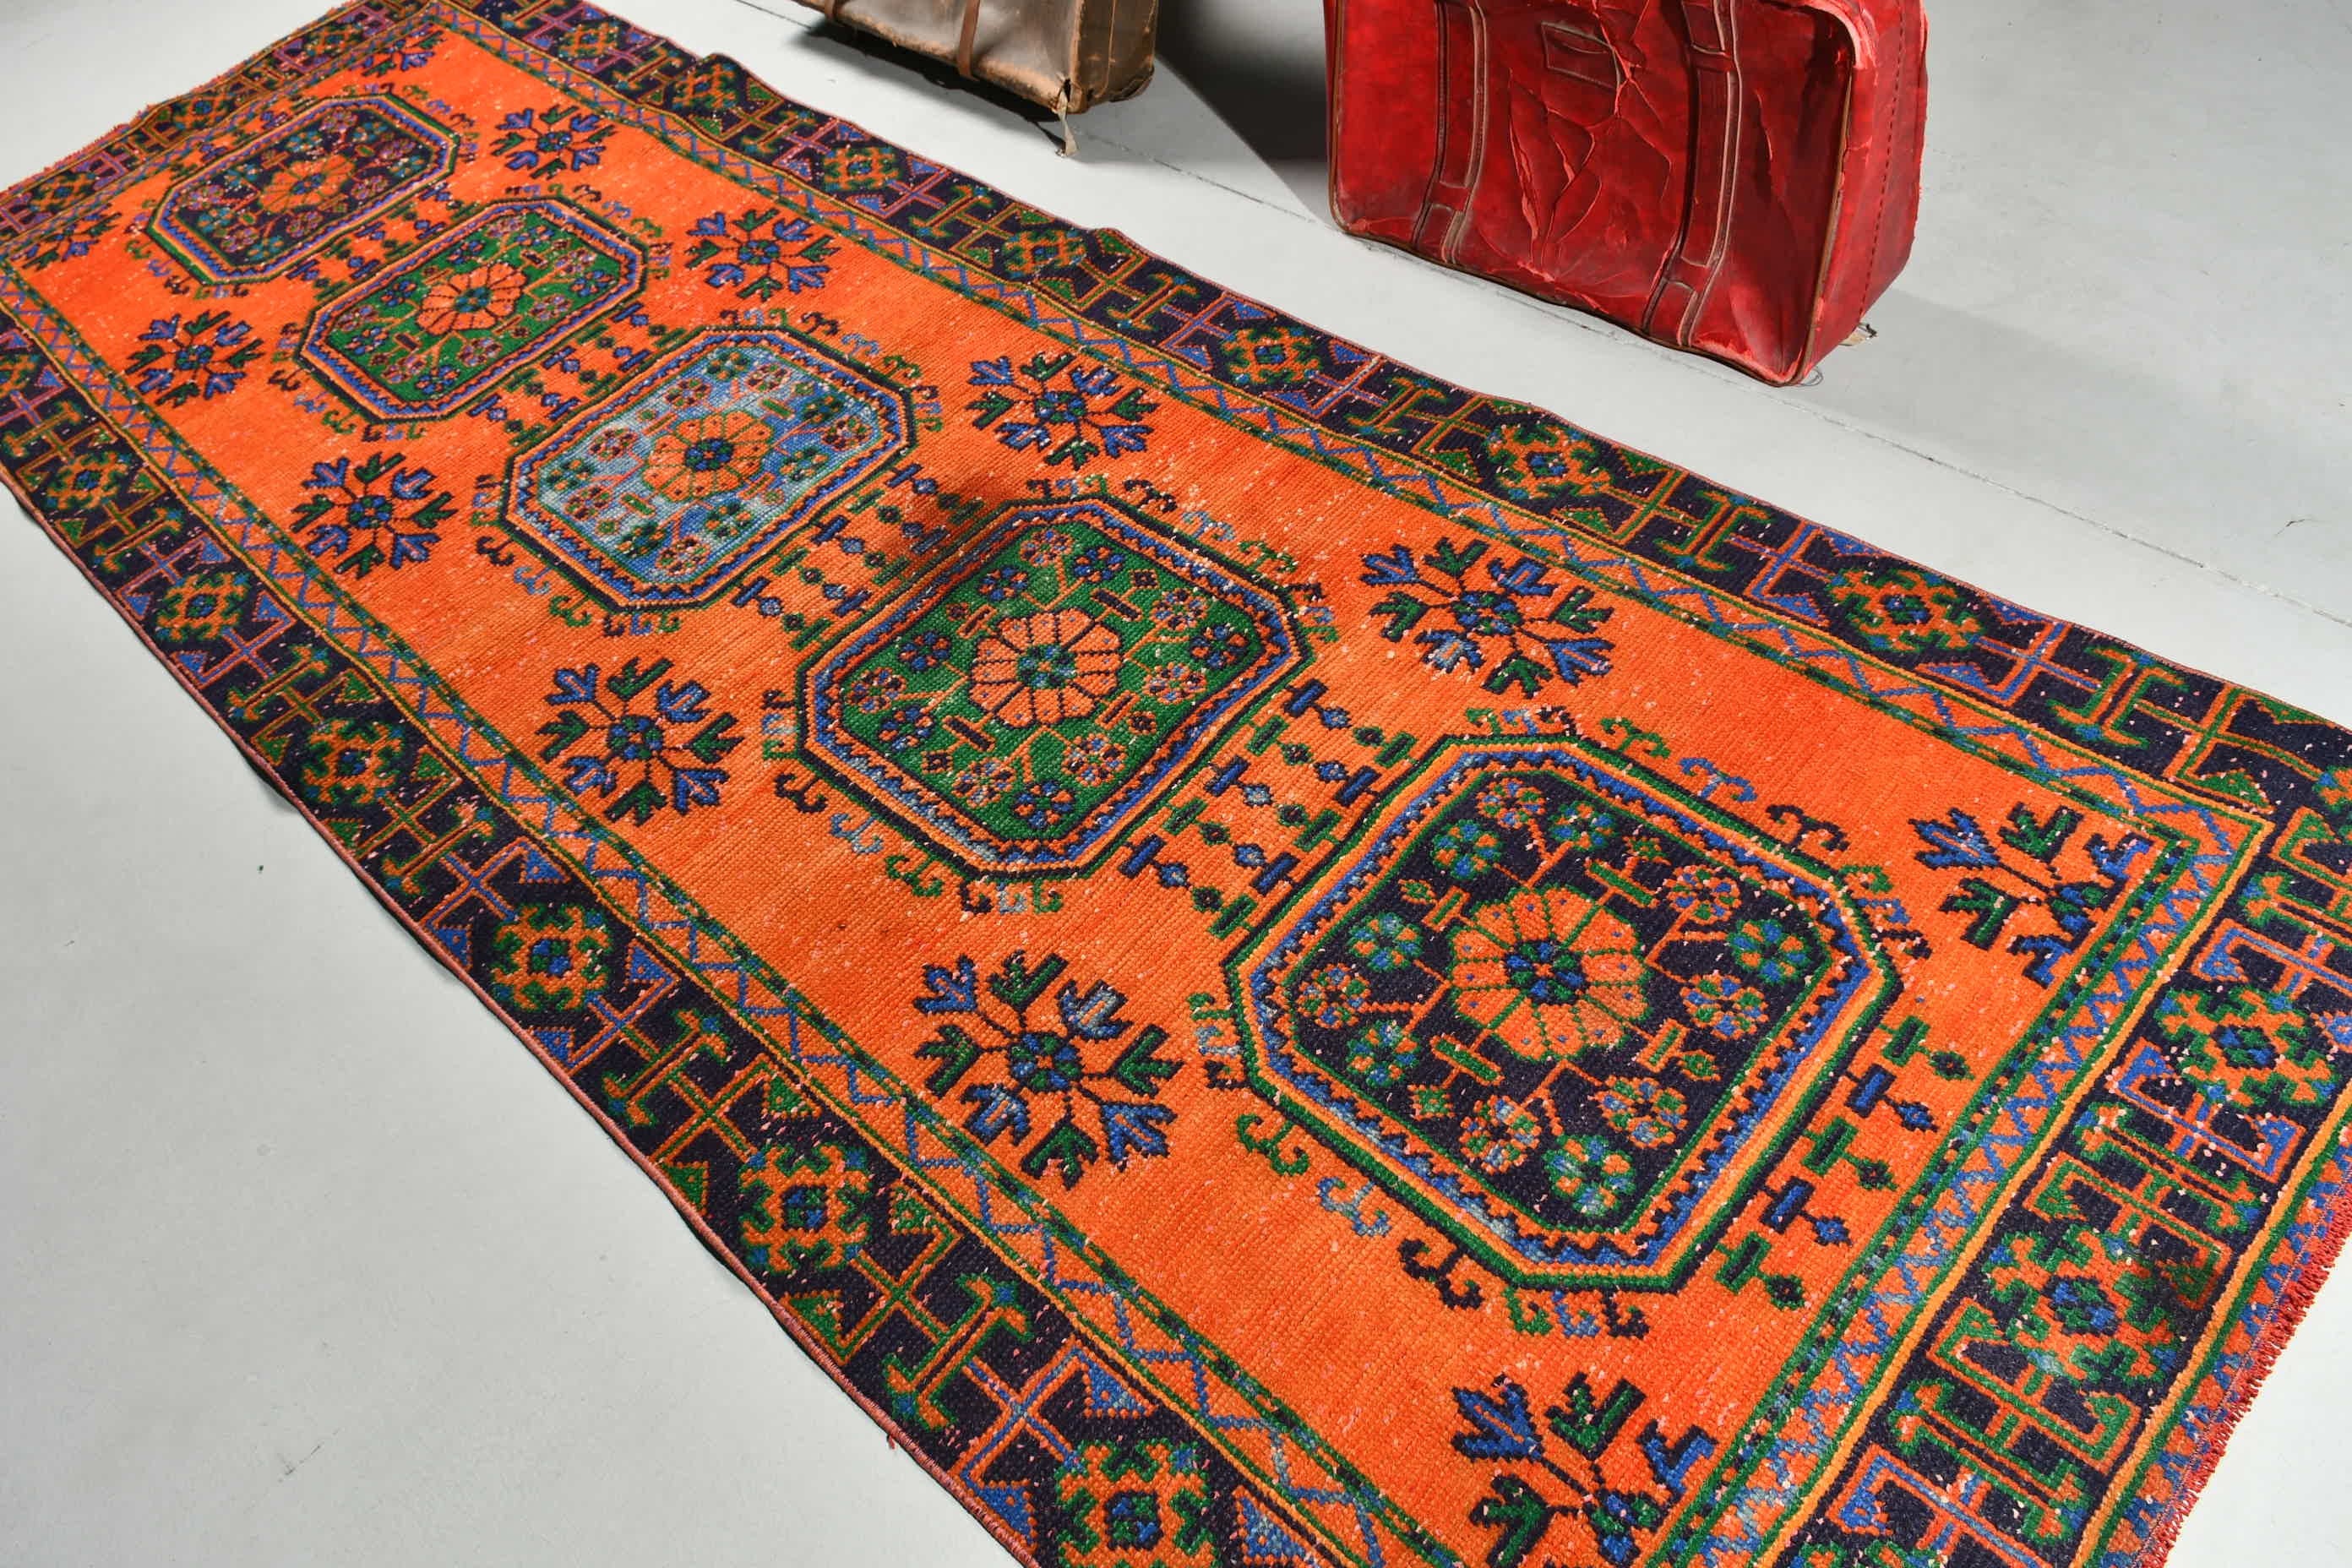 Floor Rug, Vintage Rug, Rugs for Hallway, Oriental Rug, Outdoor Rug, 3.9x10.8 ft Runner Rug, Stair Rugs, Orange Oriental Rug, Turkish Rugs